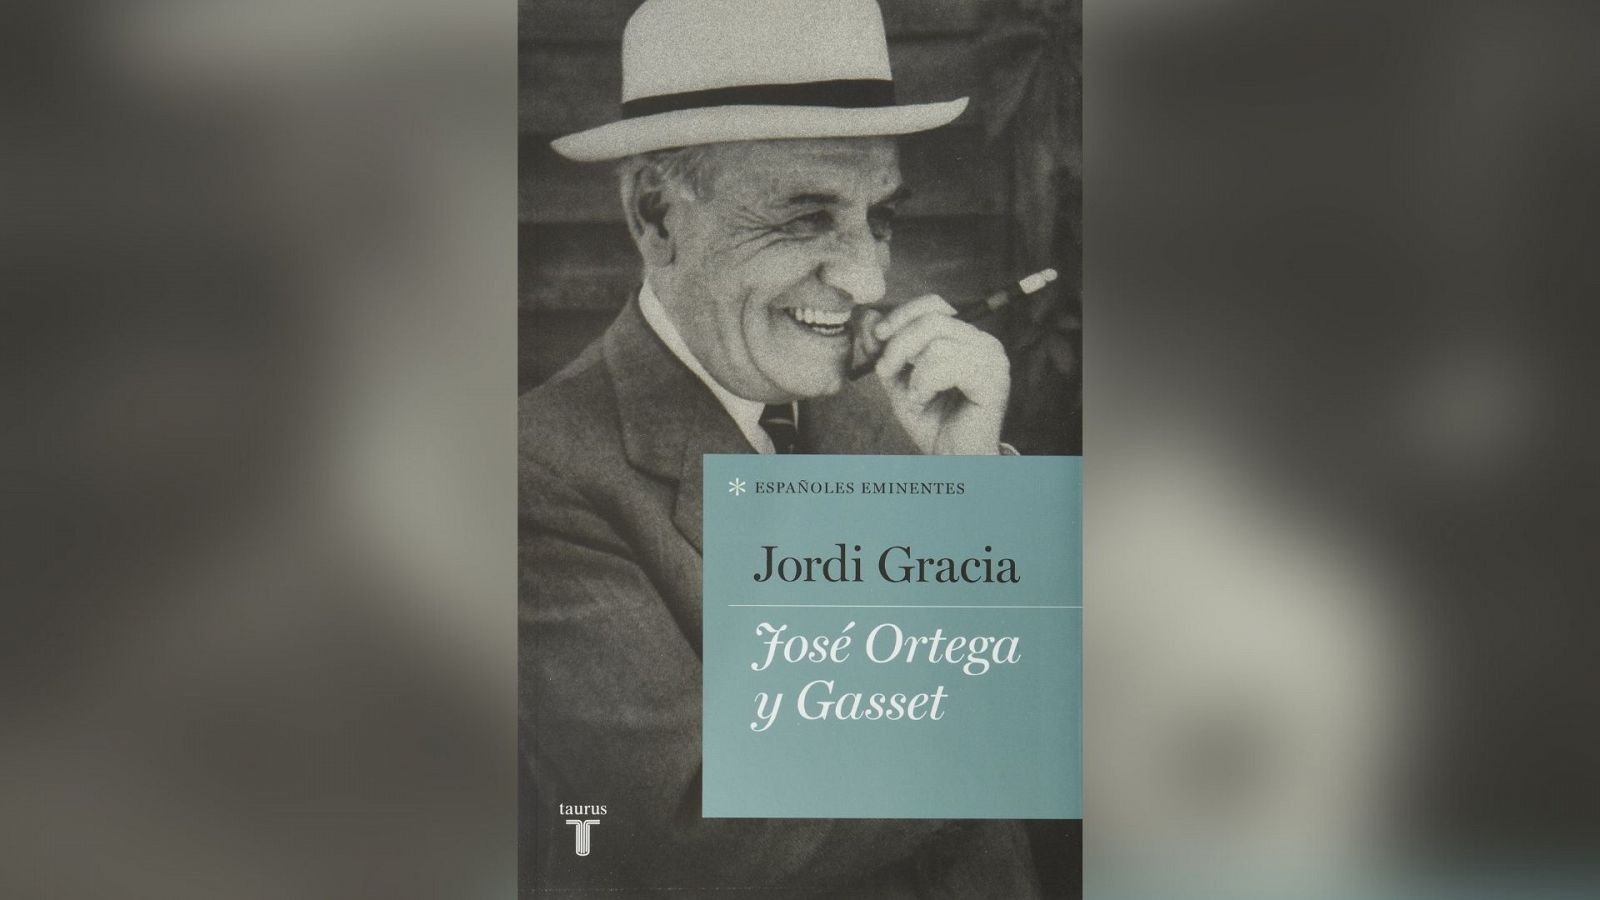  El ojo crítico - Jordi Gracia: "Ortega y Gasset no fue un señor de derechas, facha, reaccionario y antiguo como muchos piensan" - Escuchar ahora